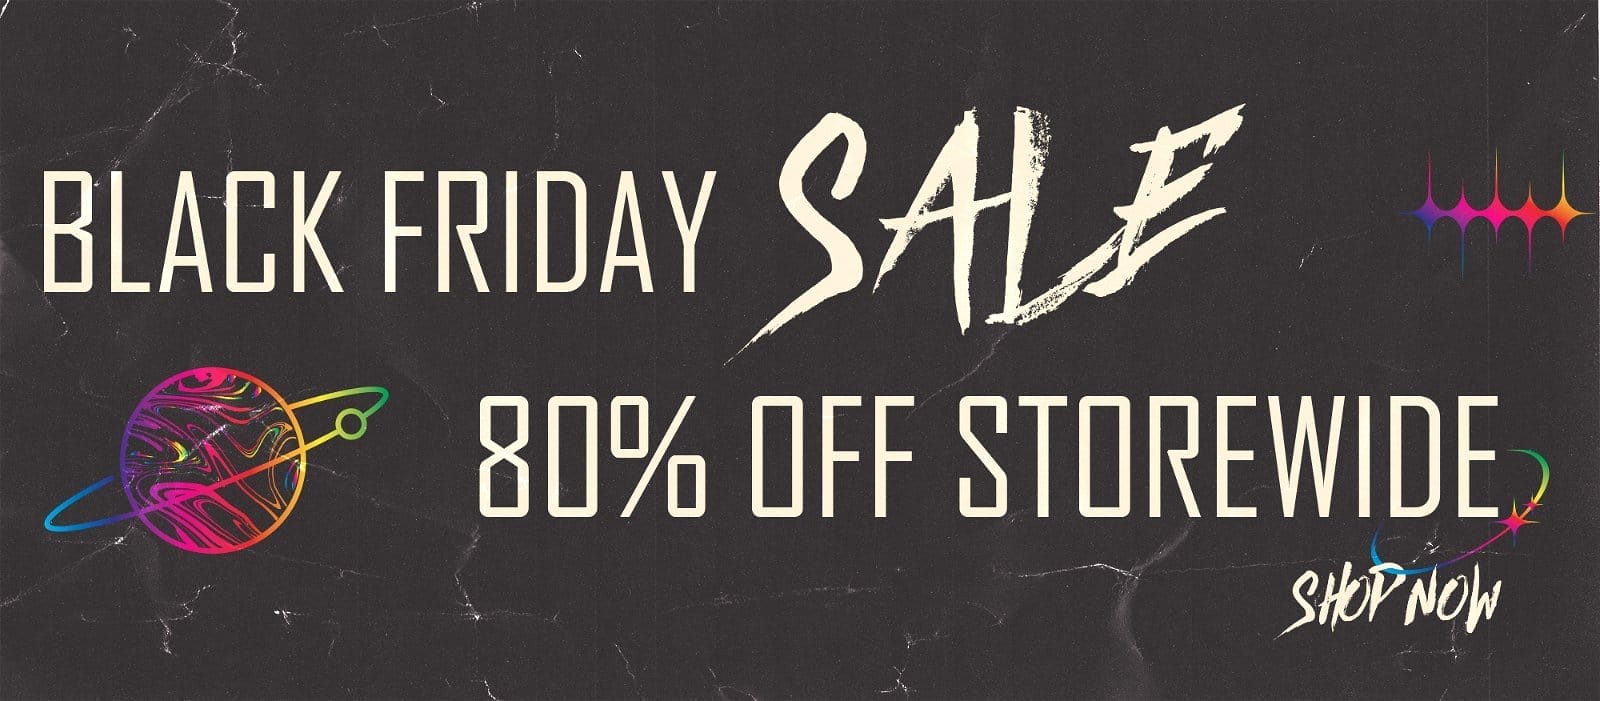 black friday sale! 80% off storewide!